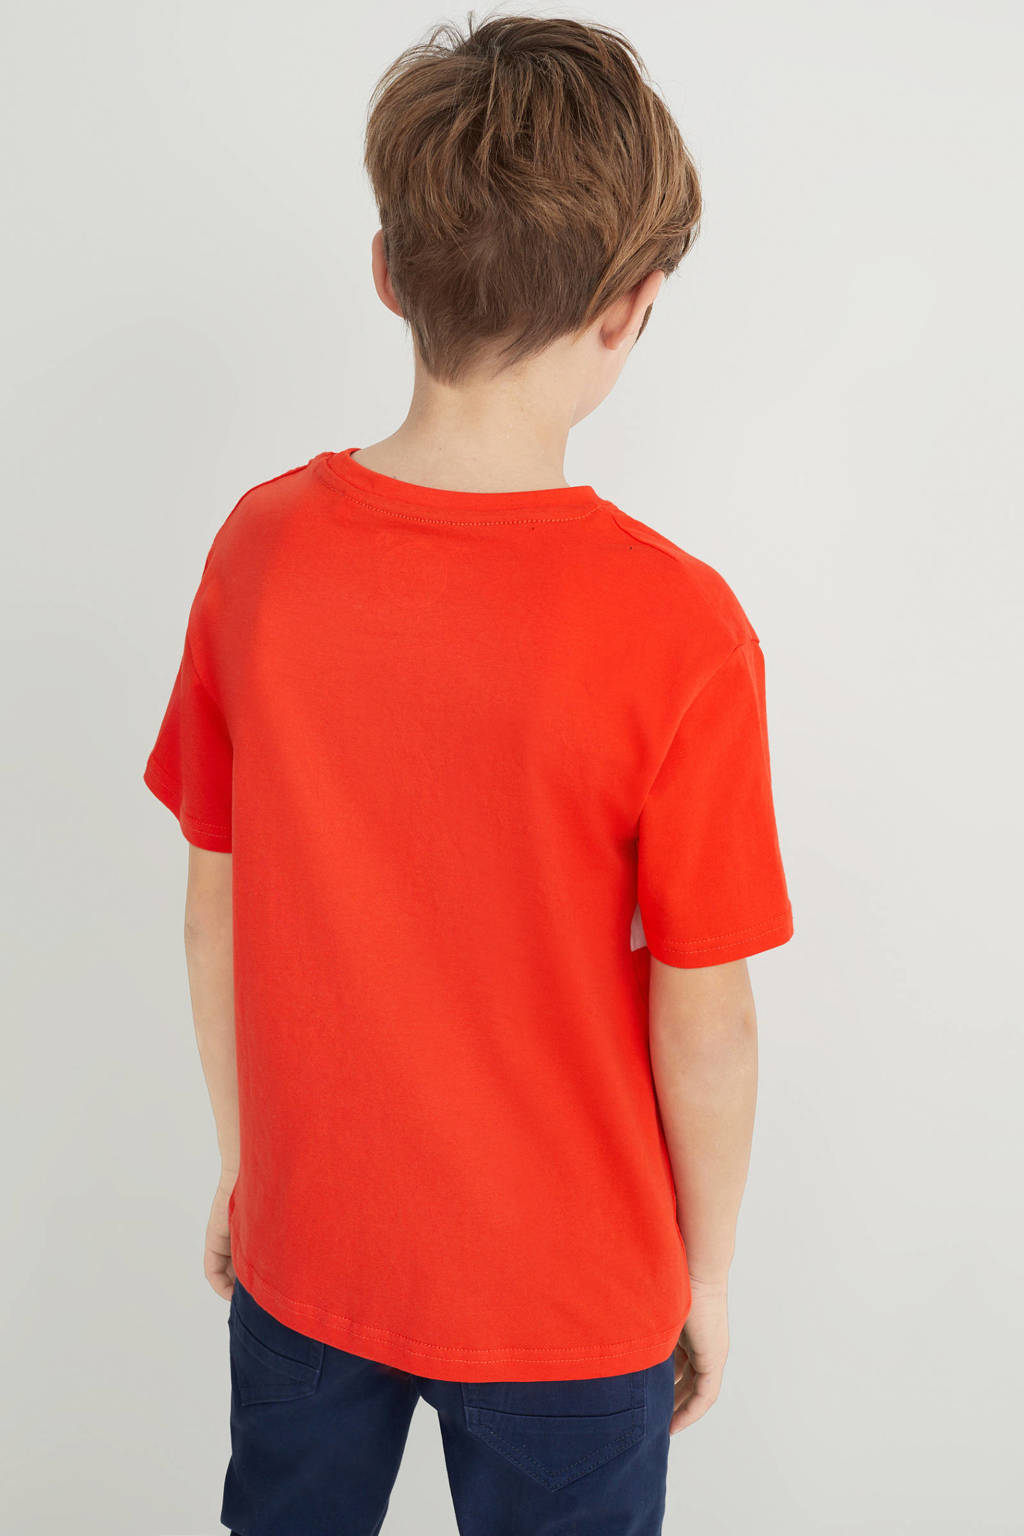 Oranje jongens C&A T-shirt van katoen met printopdruk, korte mouwen en ronde hals